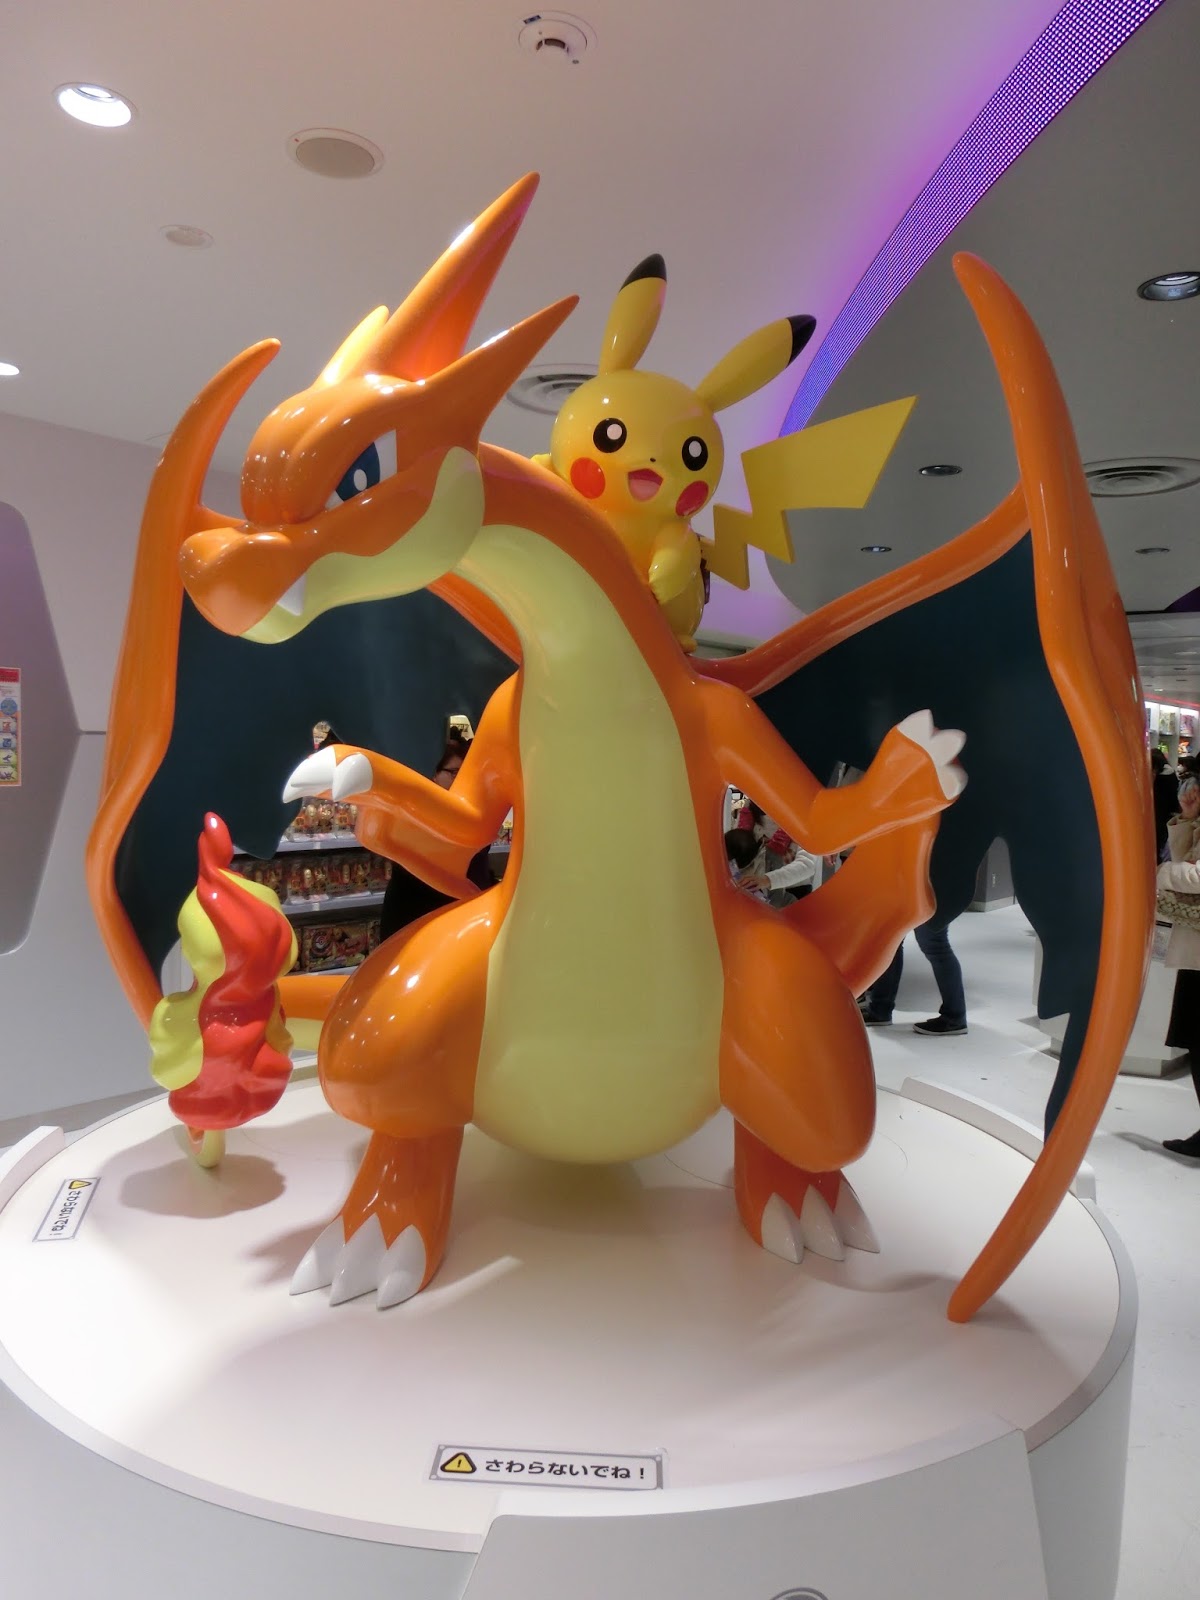 Pokémon Center Kyoto 